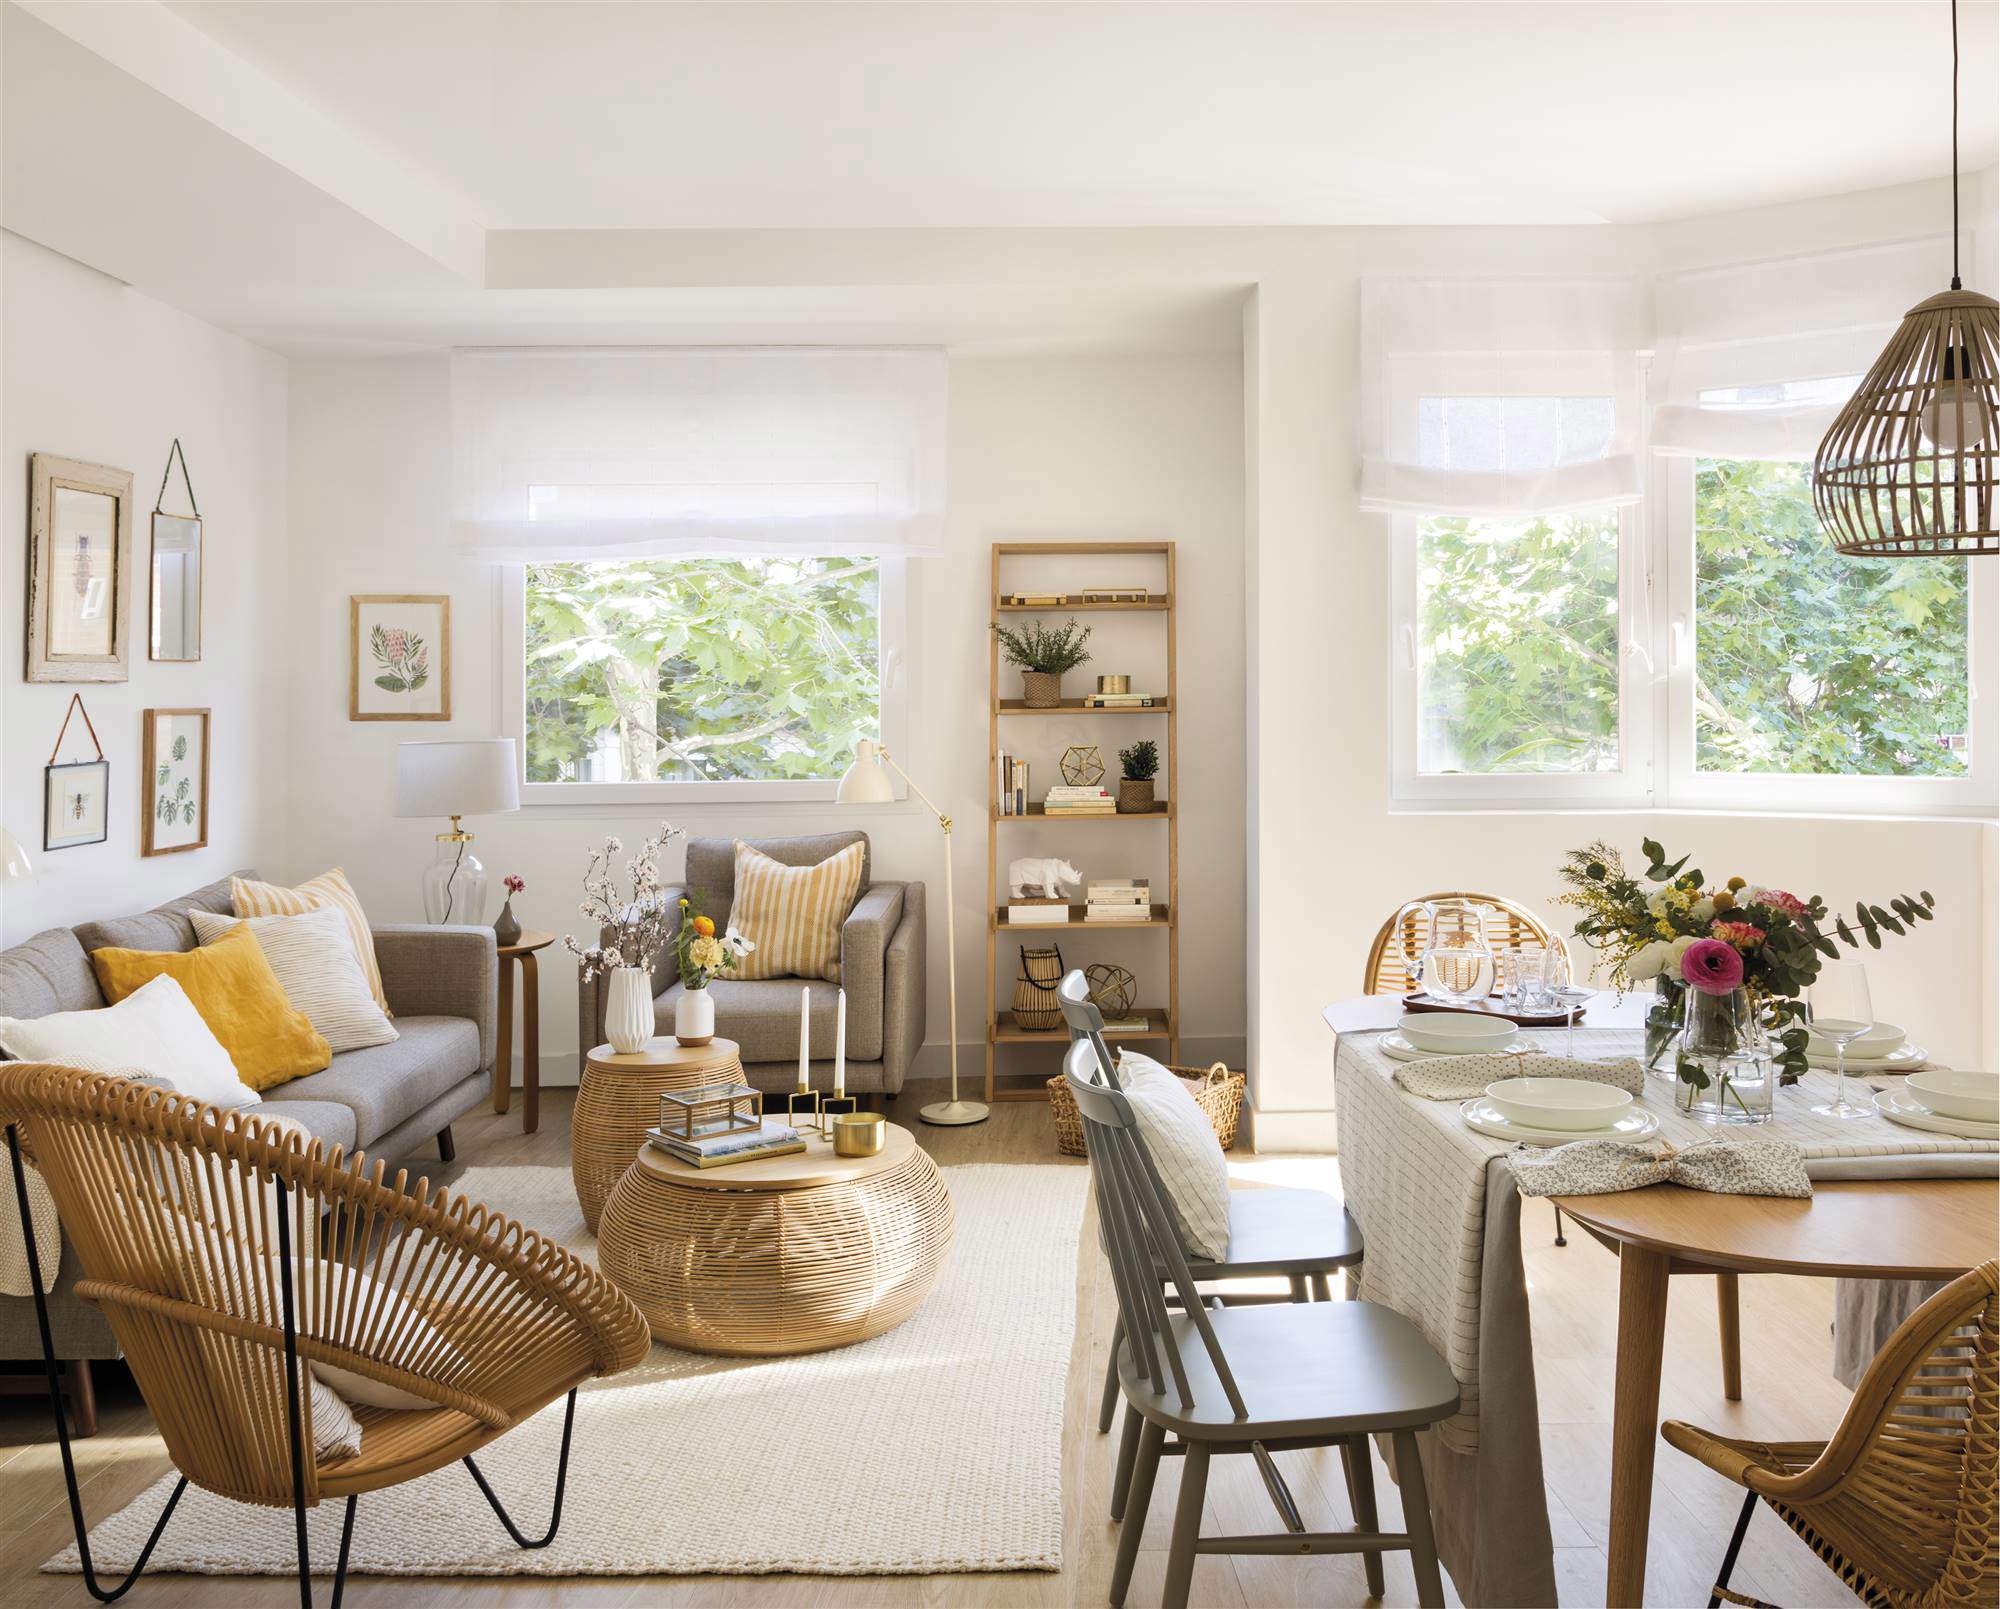 Salón con muebles de madera y tapicerías de color gris.